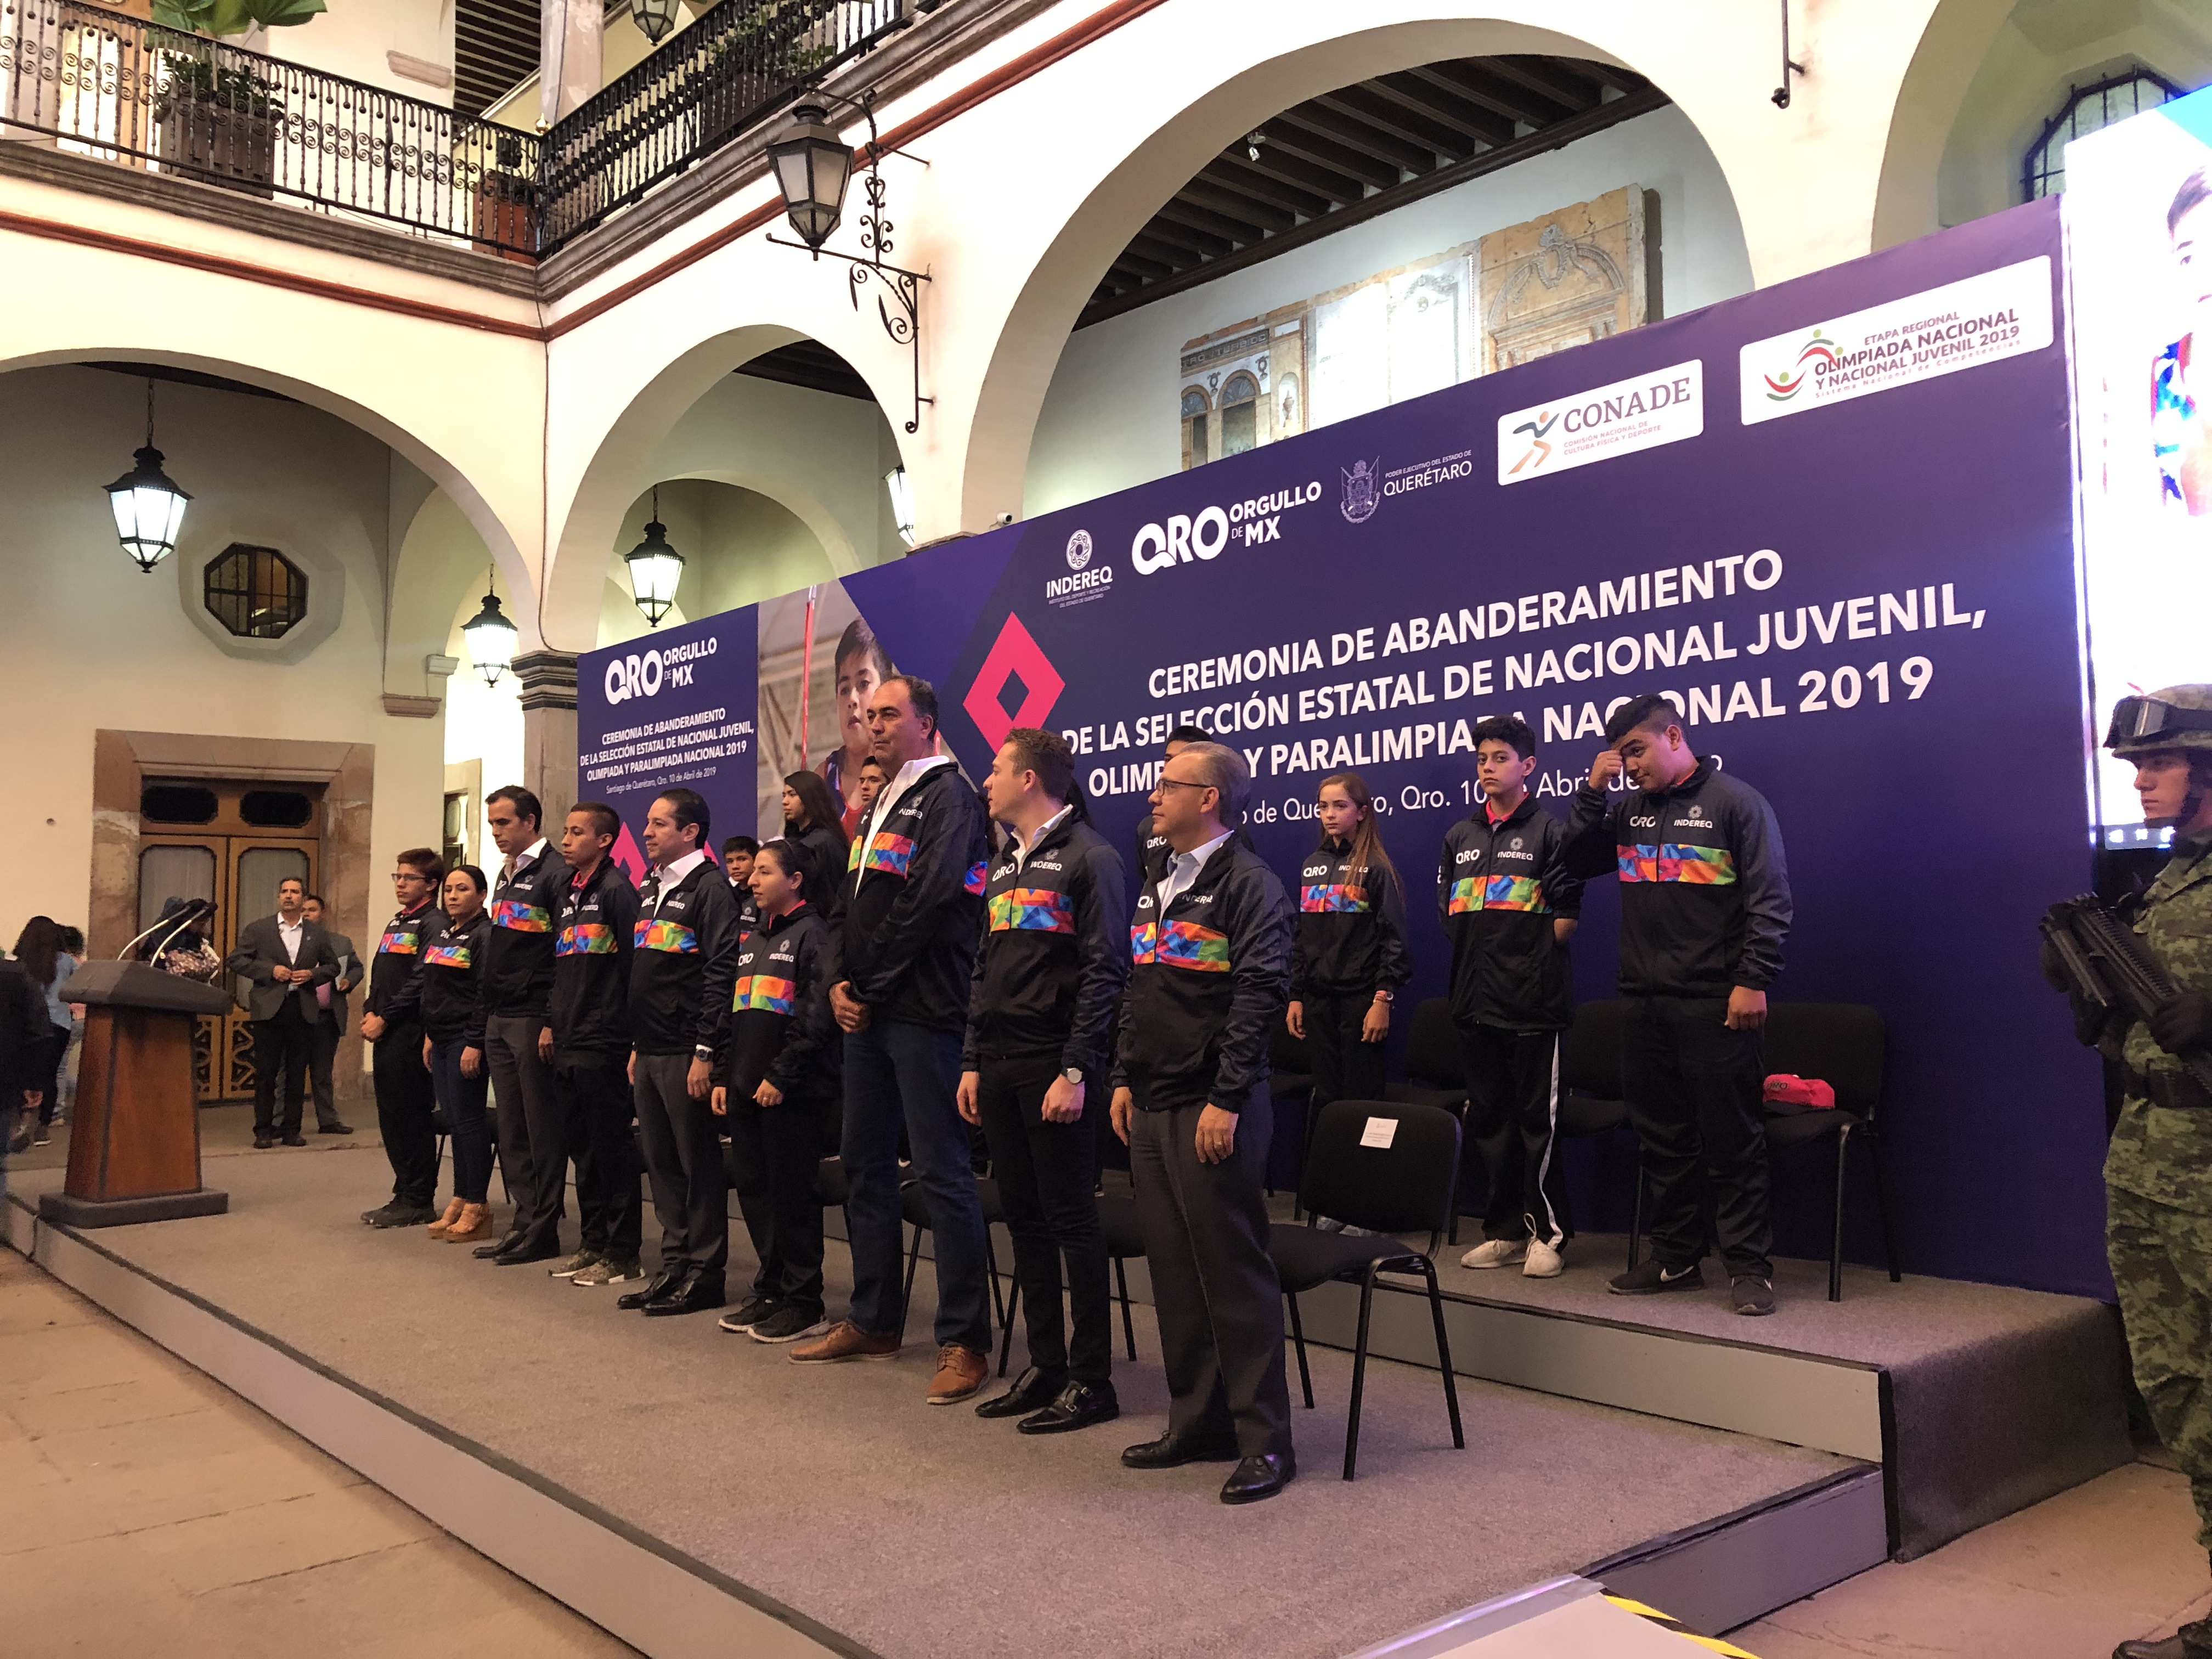  Más de 700 atletas representarán a Querétaro en la olimpiada y paraolimpiada nacional 2019